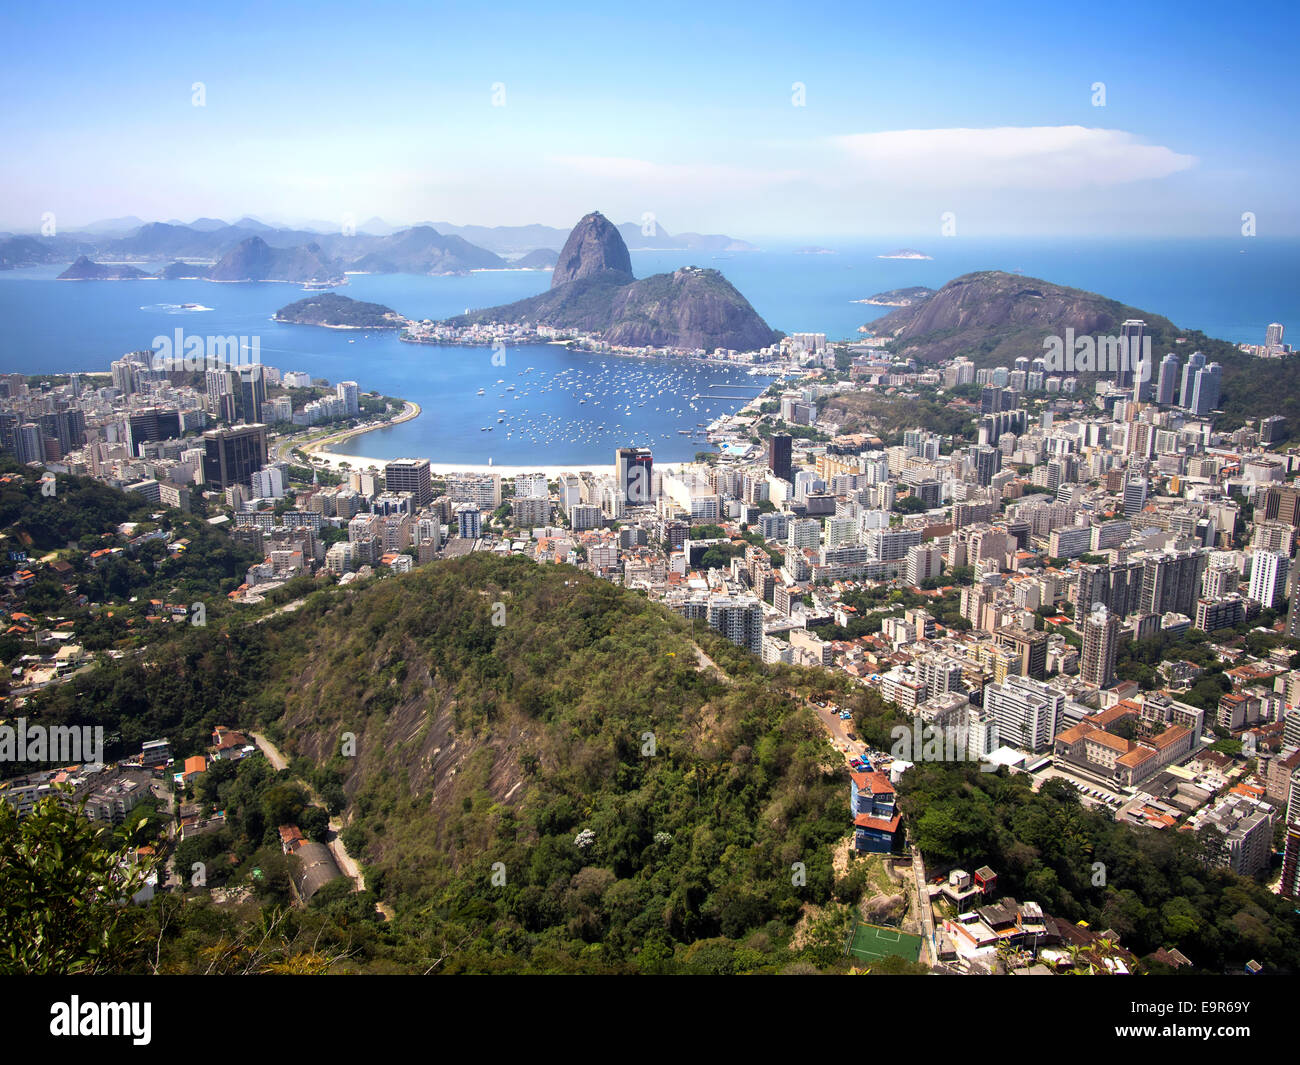 Sugar Loaf mountain and the Rio de Janeiro cityscape, Brazil. Stock Photo